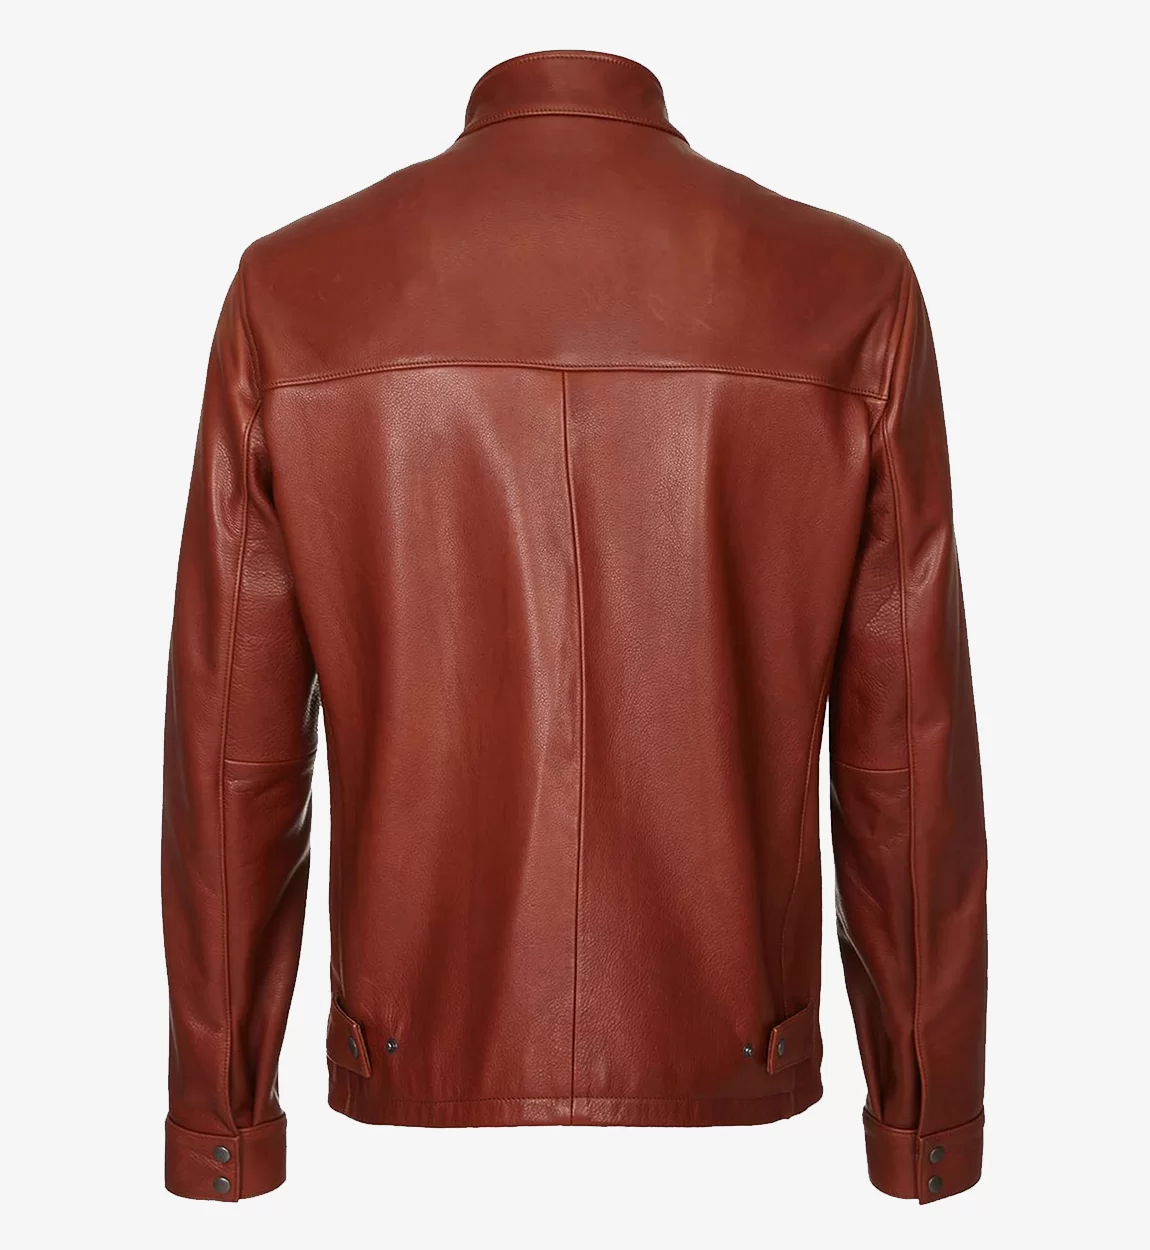 Mens-Dark-Brown-Plain-Biker-Cafe-Racer-Leather-Jacket1-1.webp